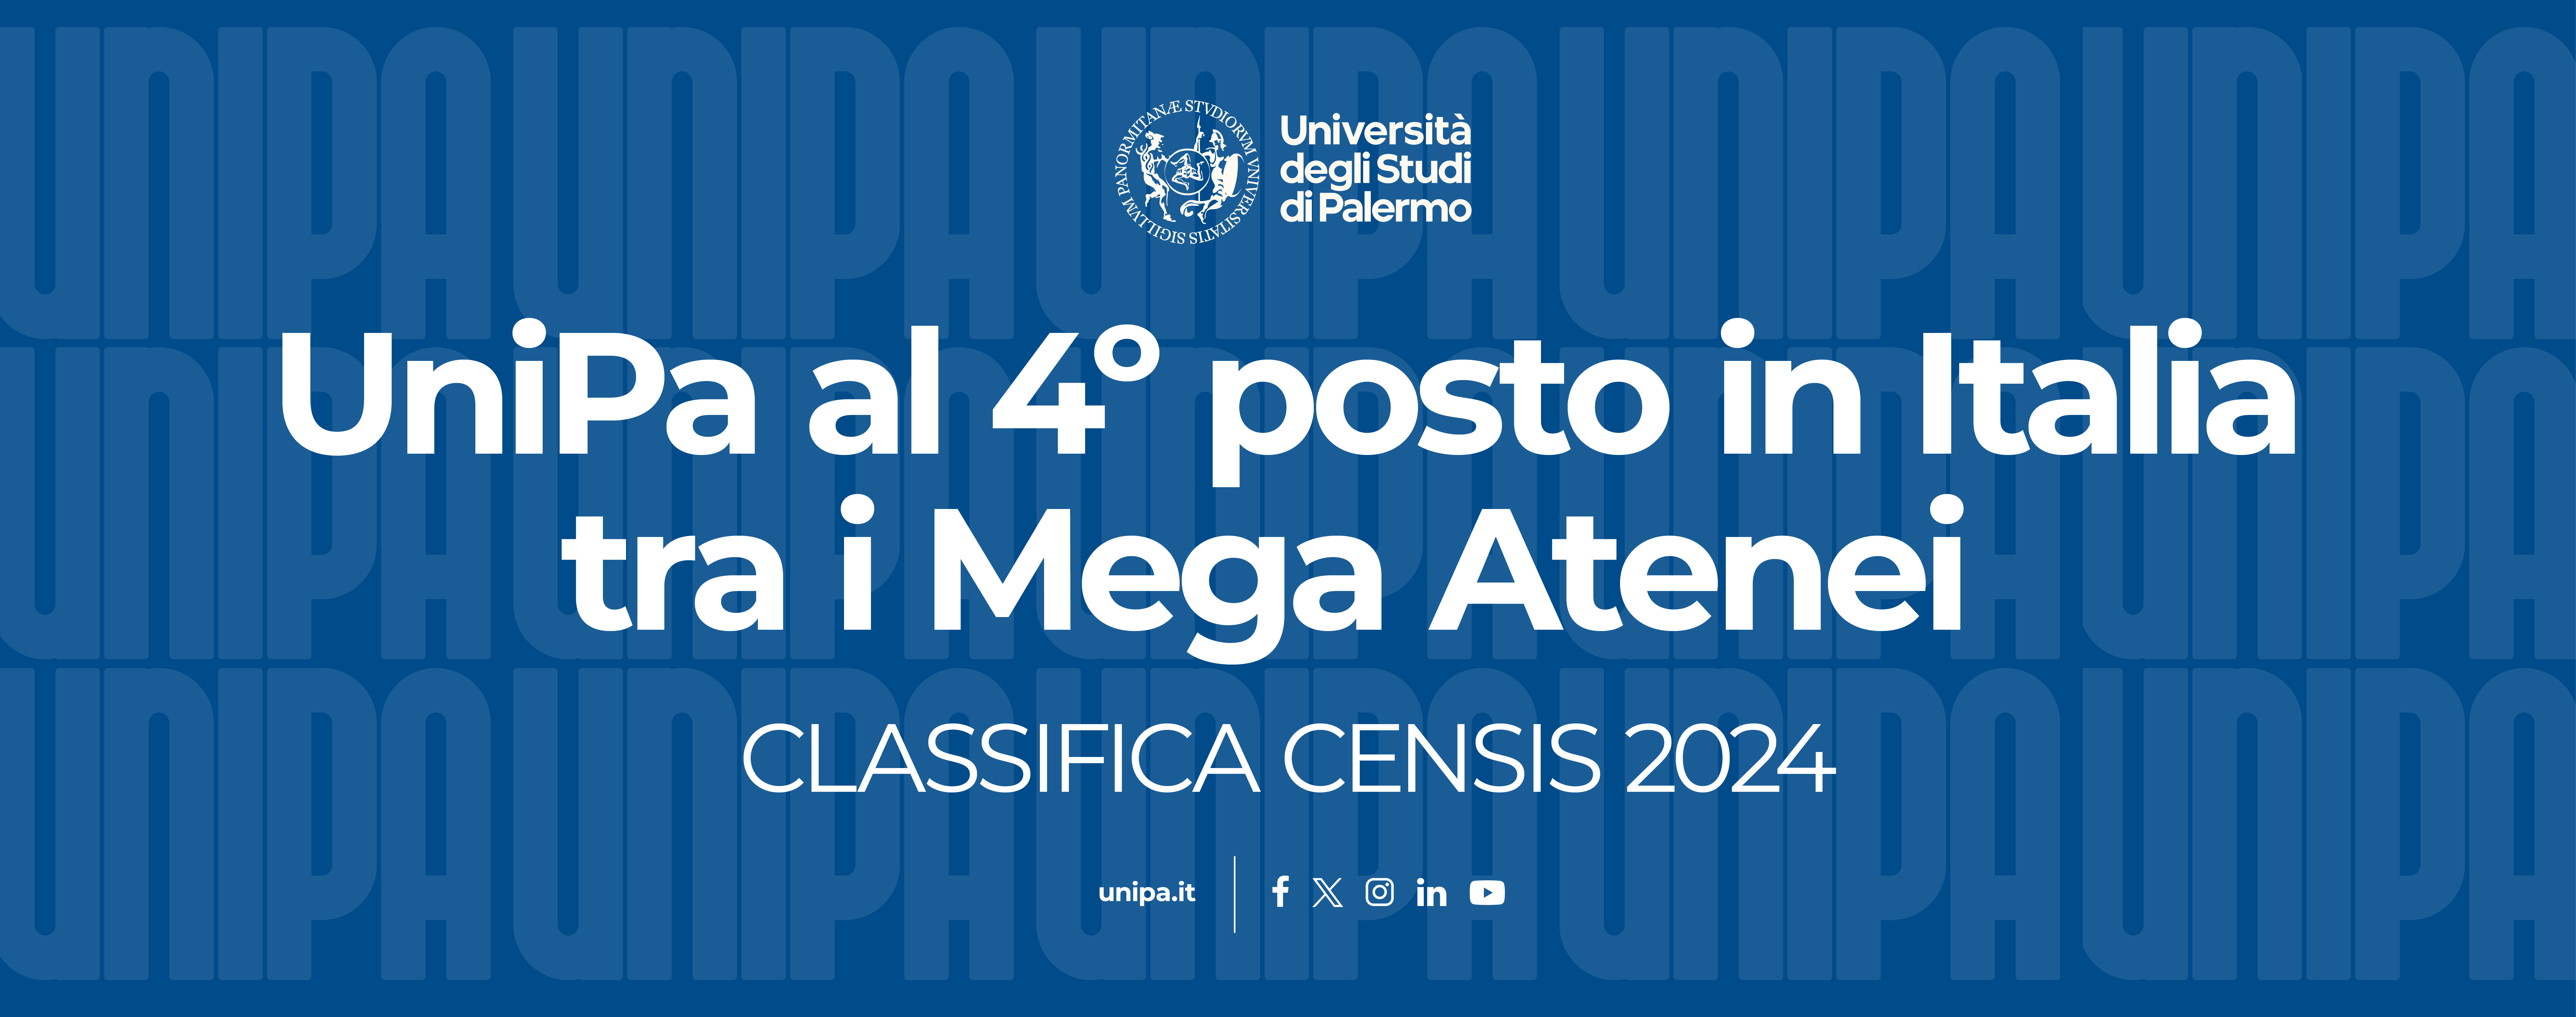 UniPa al quarto posto in Italia nella classifica Censis 2024 - Rettore Midiri: “Un netto salto in avanti che certifica la competitività e l’attrattività del nostro Ateneo”